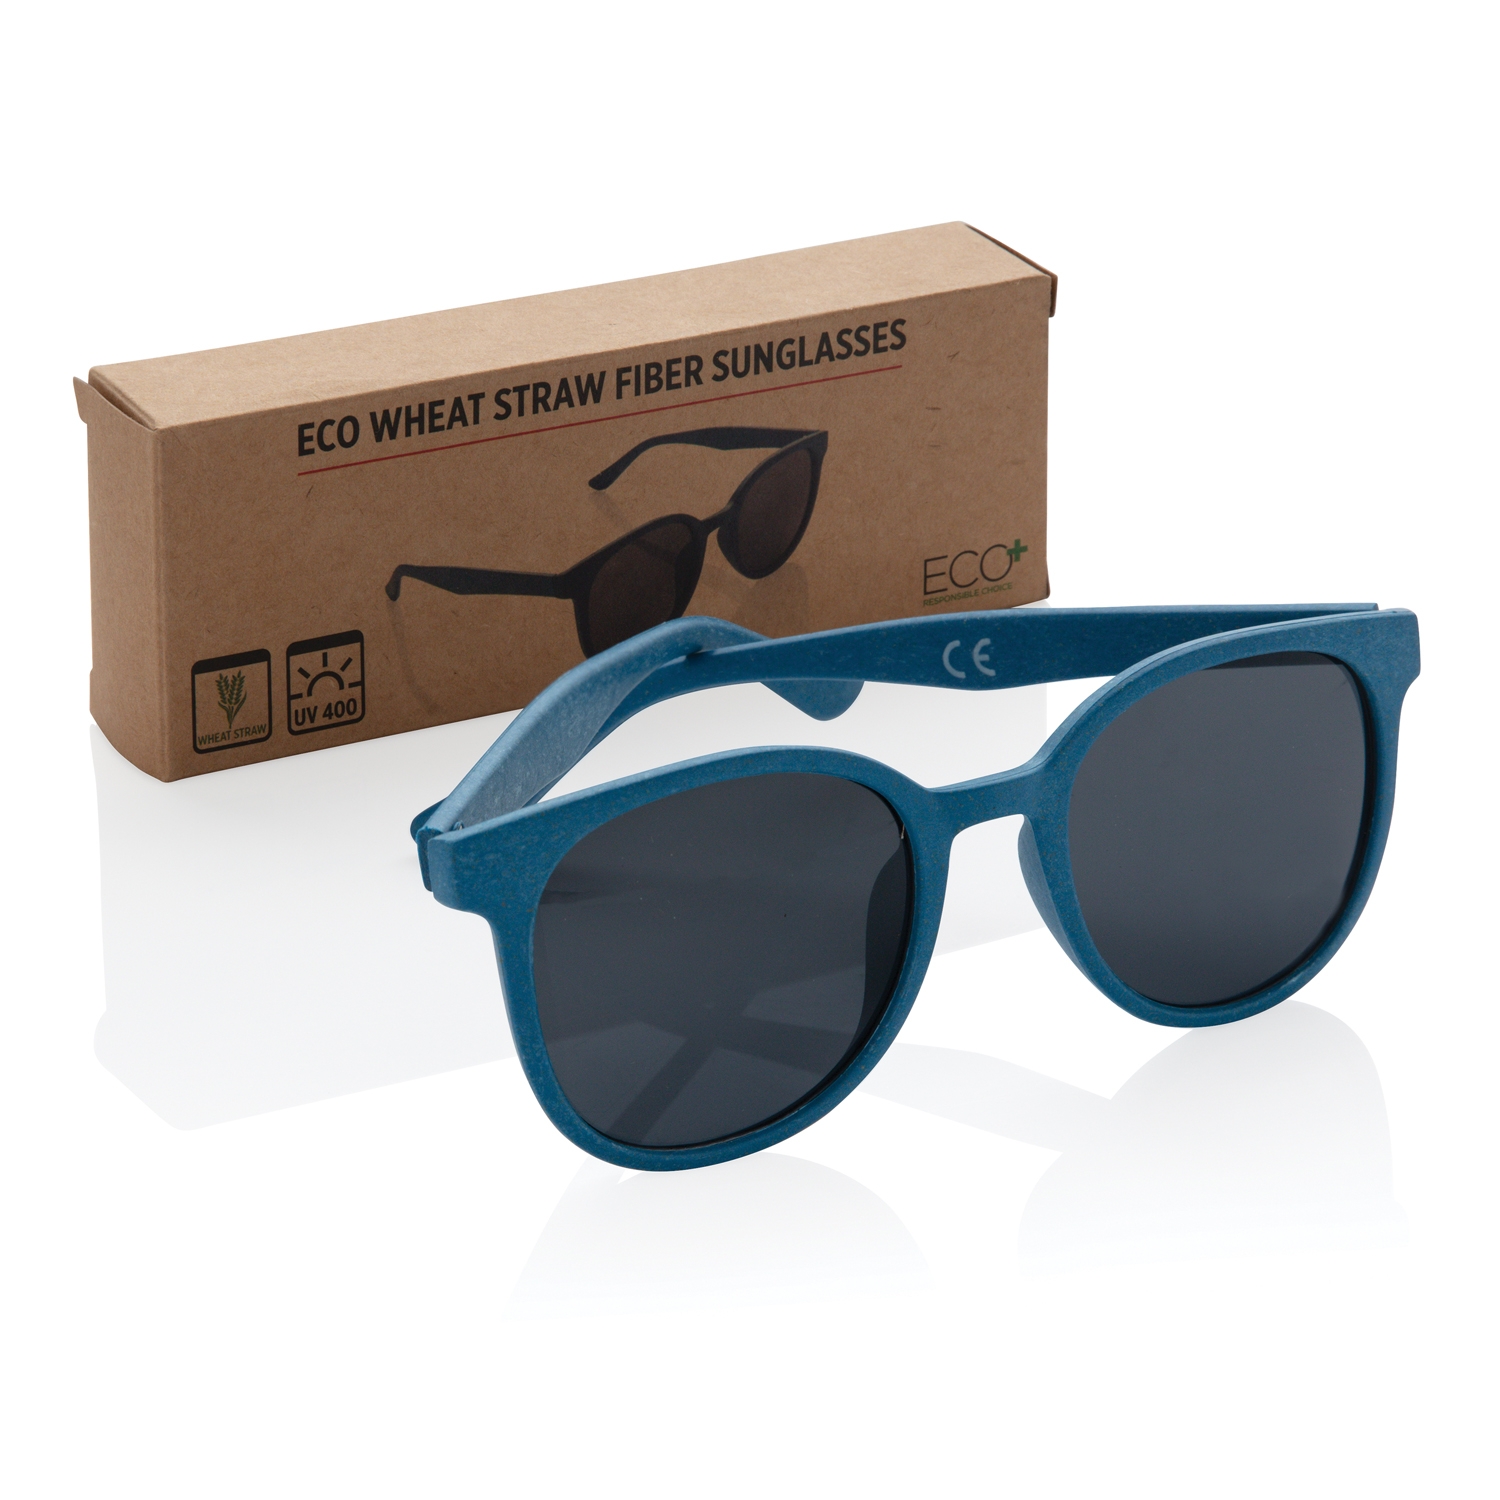 Солнцезащитные очки ECO, синий, волокно пшеничной соломы; pp